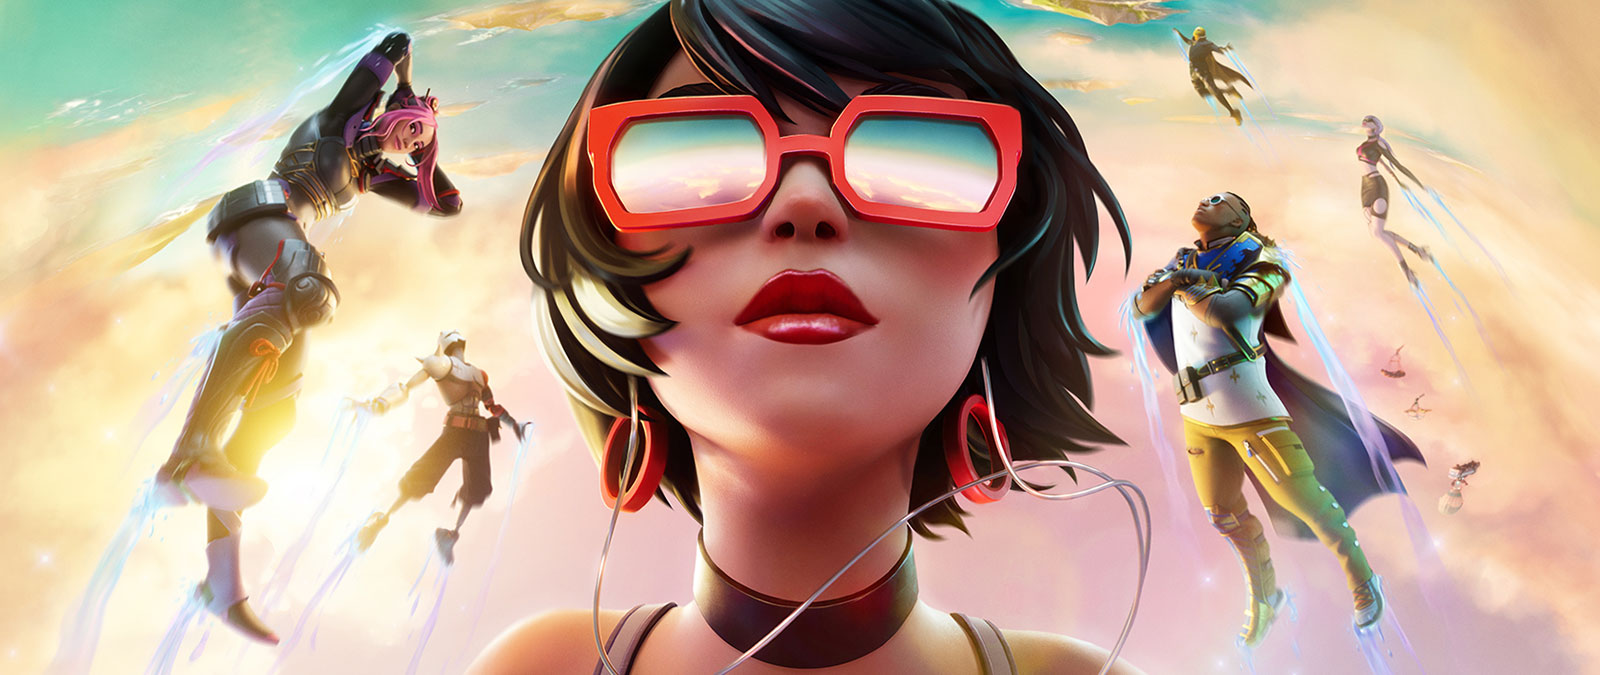 Fortnite, uma rapariga de óculos de sol vermelhos flutua nas nuvens com outras personagens no céu com cor pastel.